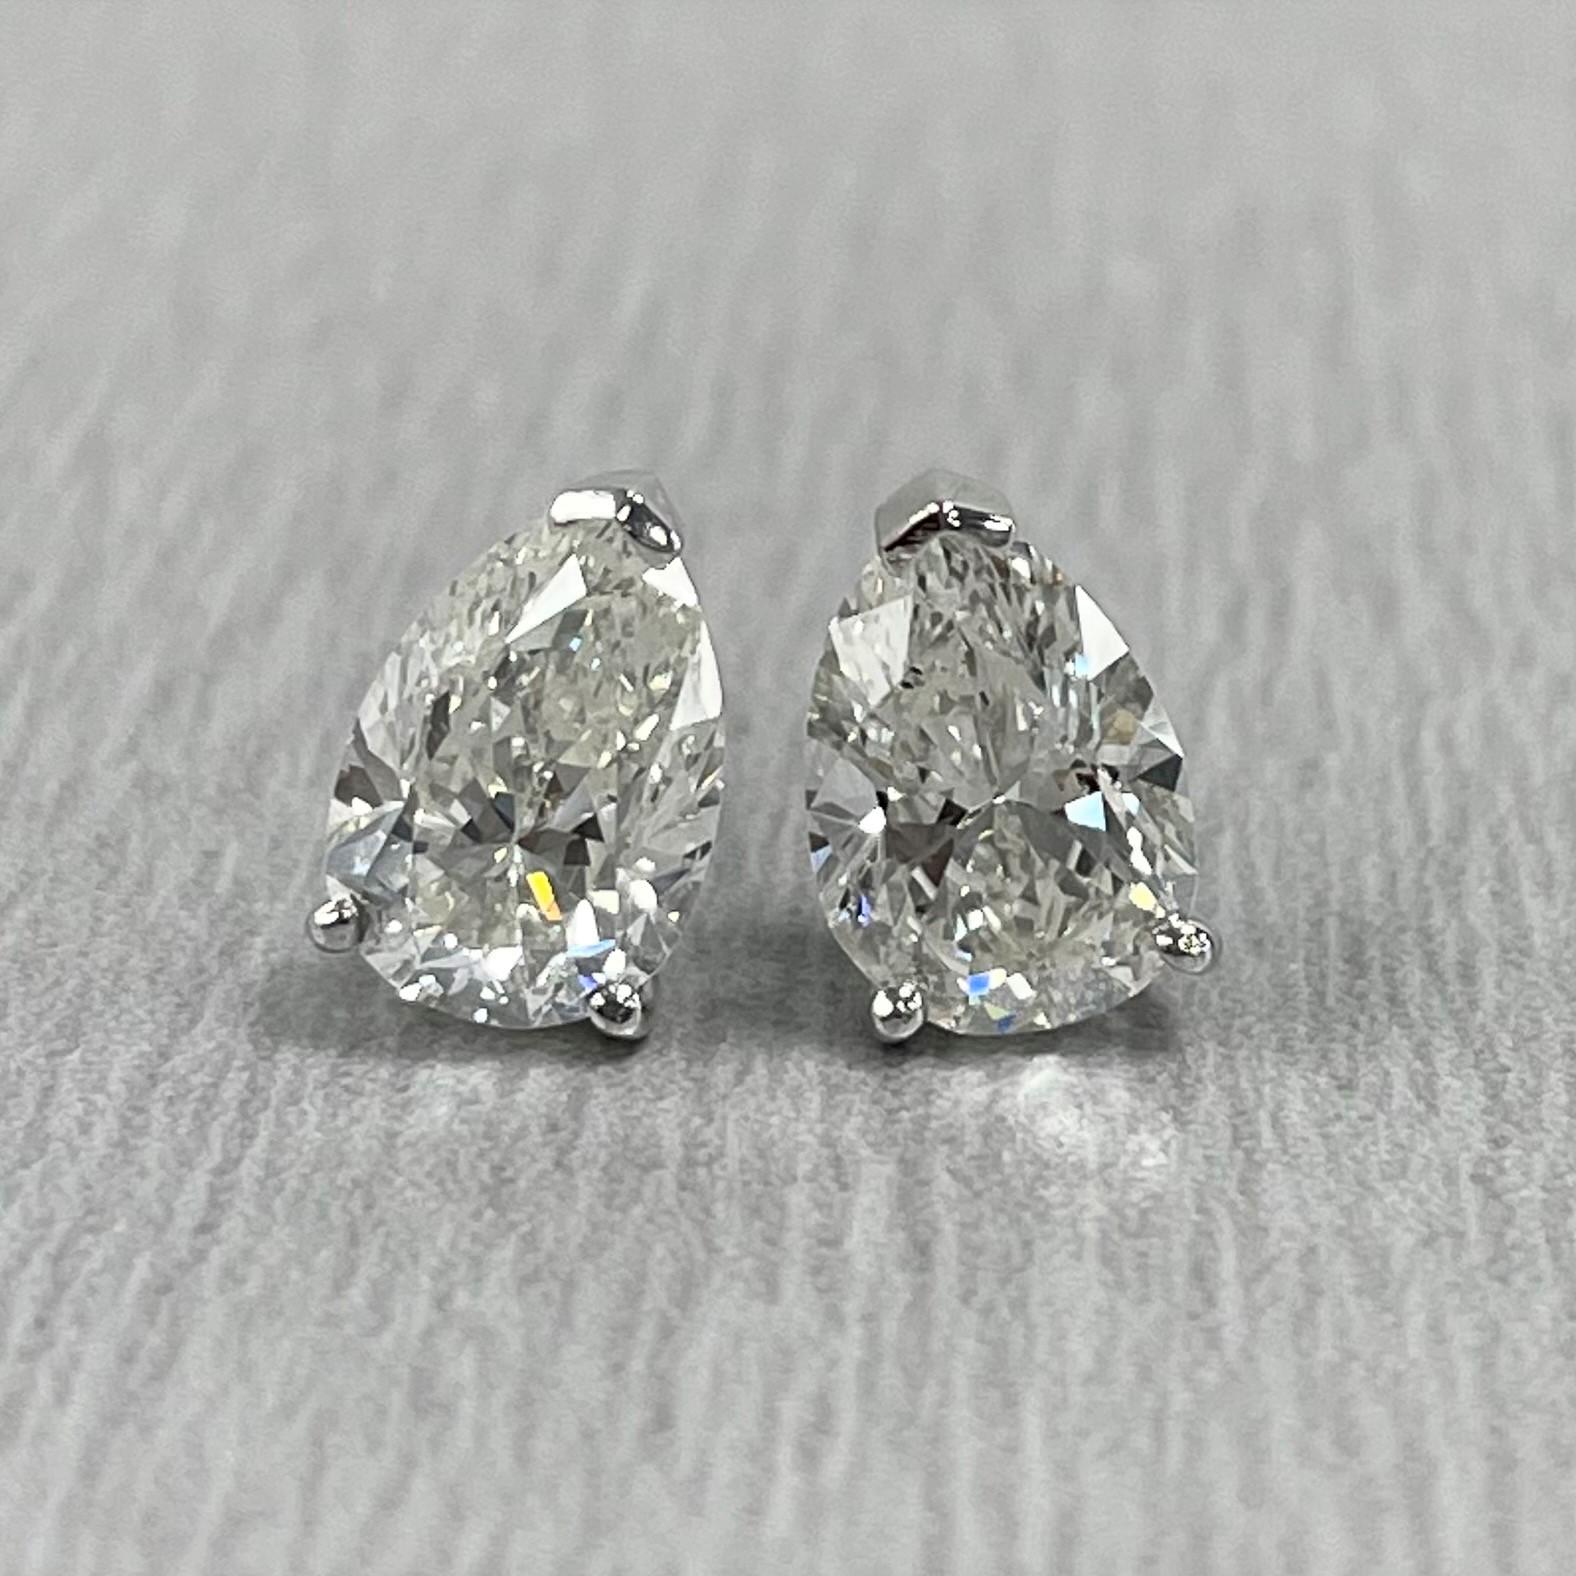 Solitär-Diamantohrstecker sind ein typisches Alltagsschmuckstück. Sie sind ein Klassiker und ein Statement zugleich. 

Form der Diamanten: Birnenform
Zentraler Diamant (1) Gewicht: 1,33 ct 
Diamant-Farbe: I
Diamant Reinheit: SI2 (geringfügig